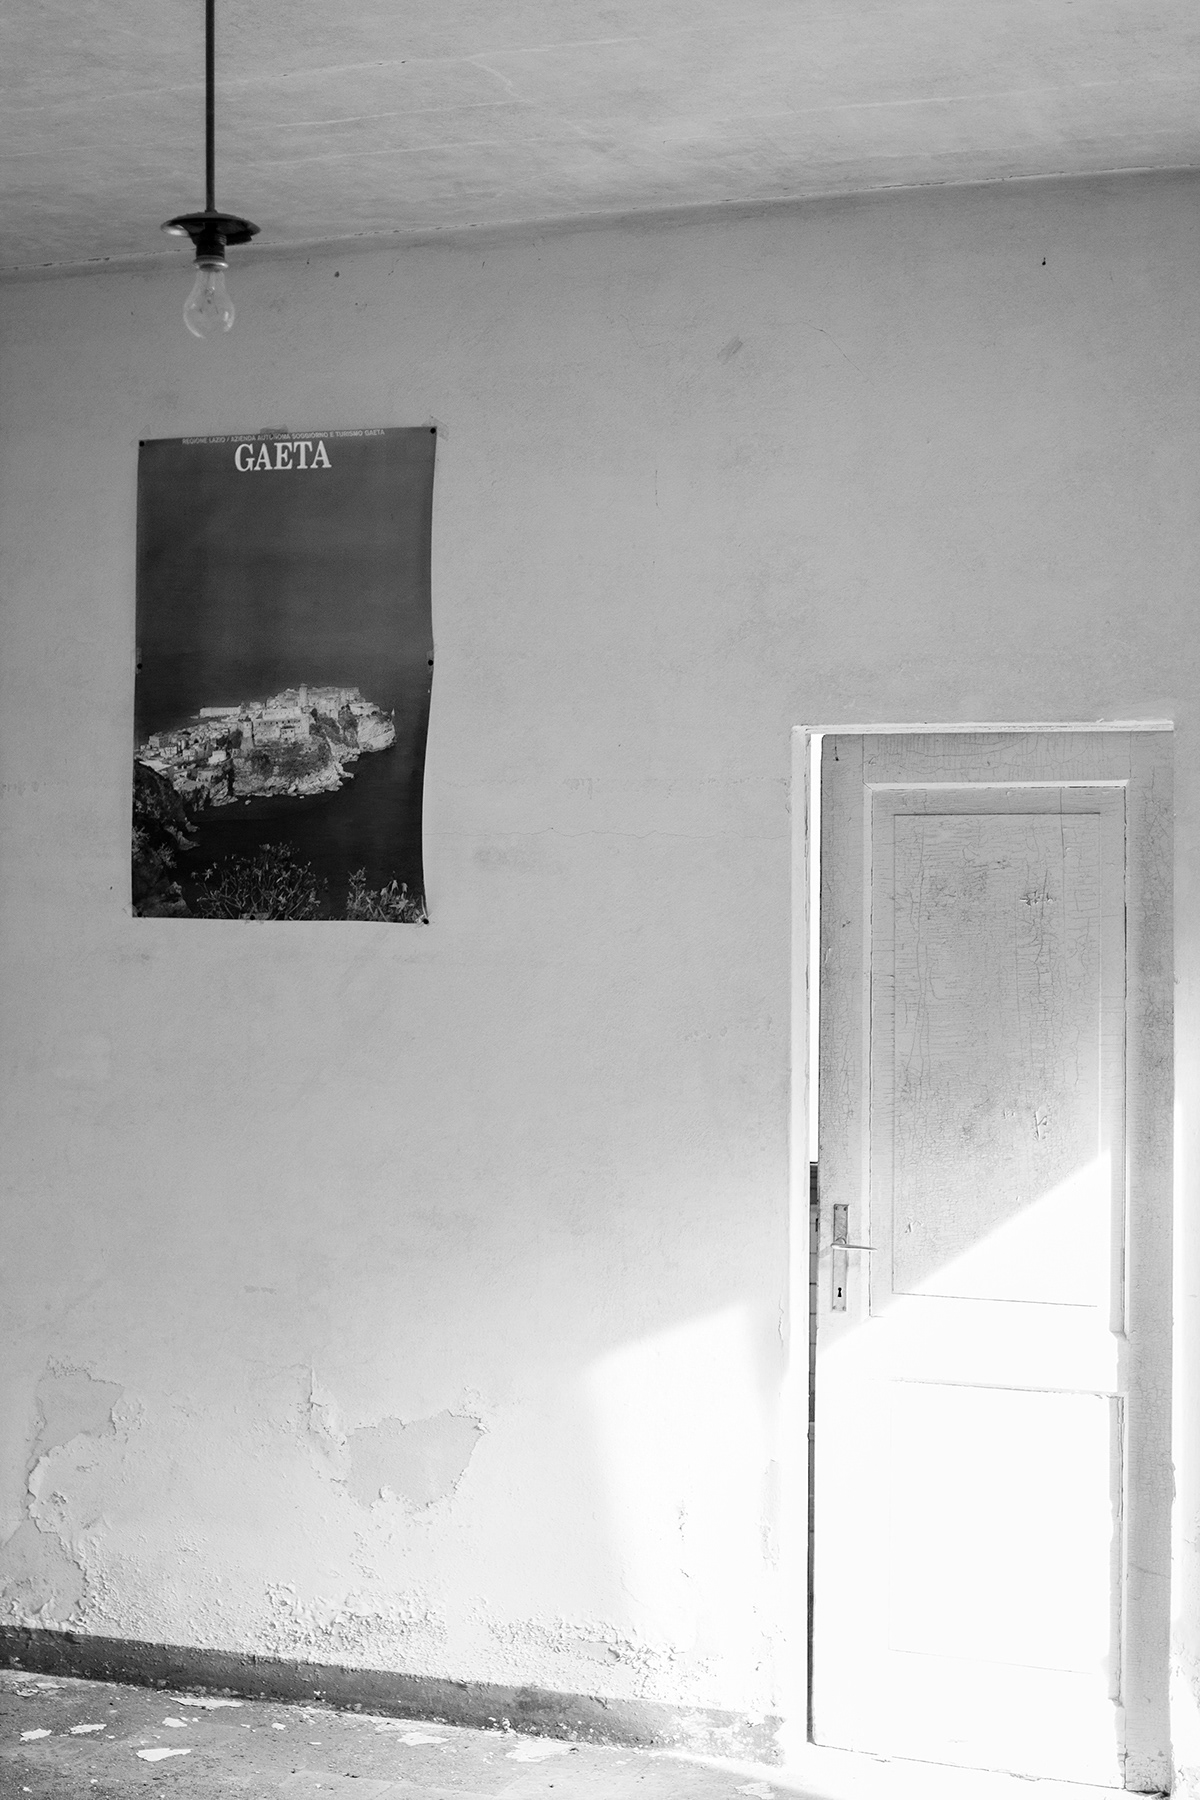 NC ND TT pierluigi claudino ospedale al mare lido di Venezia Venice venezia black and white bianco e nero camera film DSLR camera festival della giudecca festival arte Della Giudecca